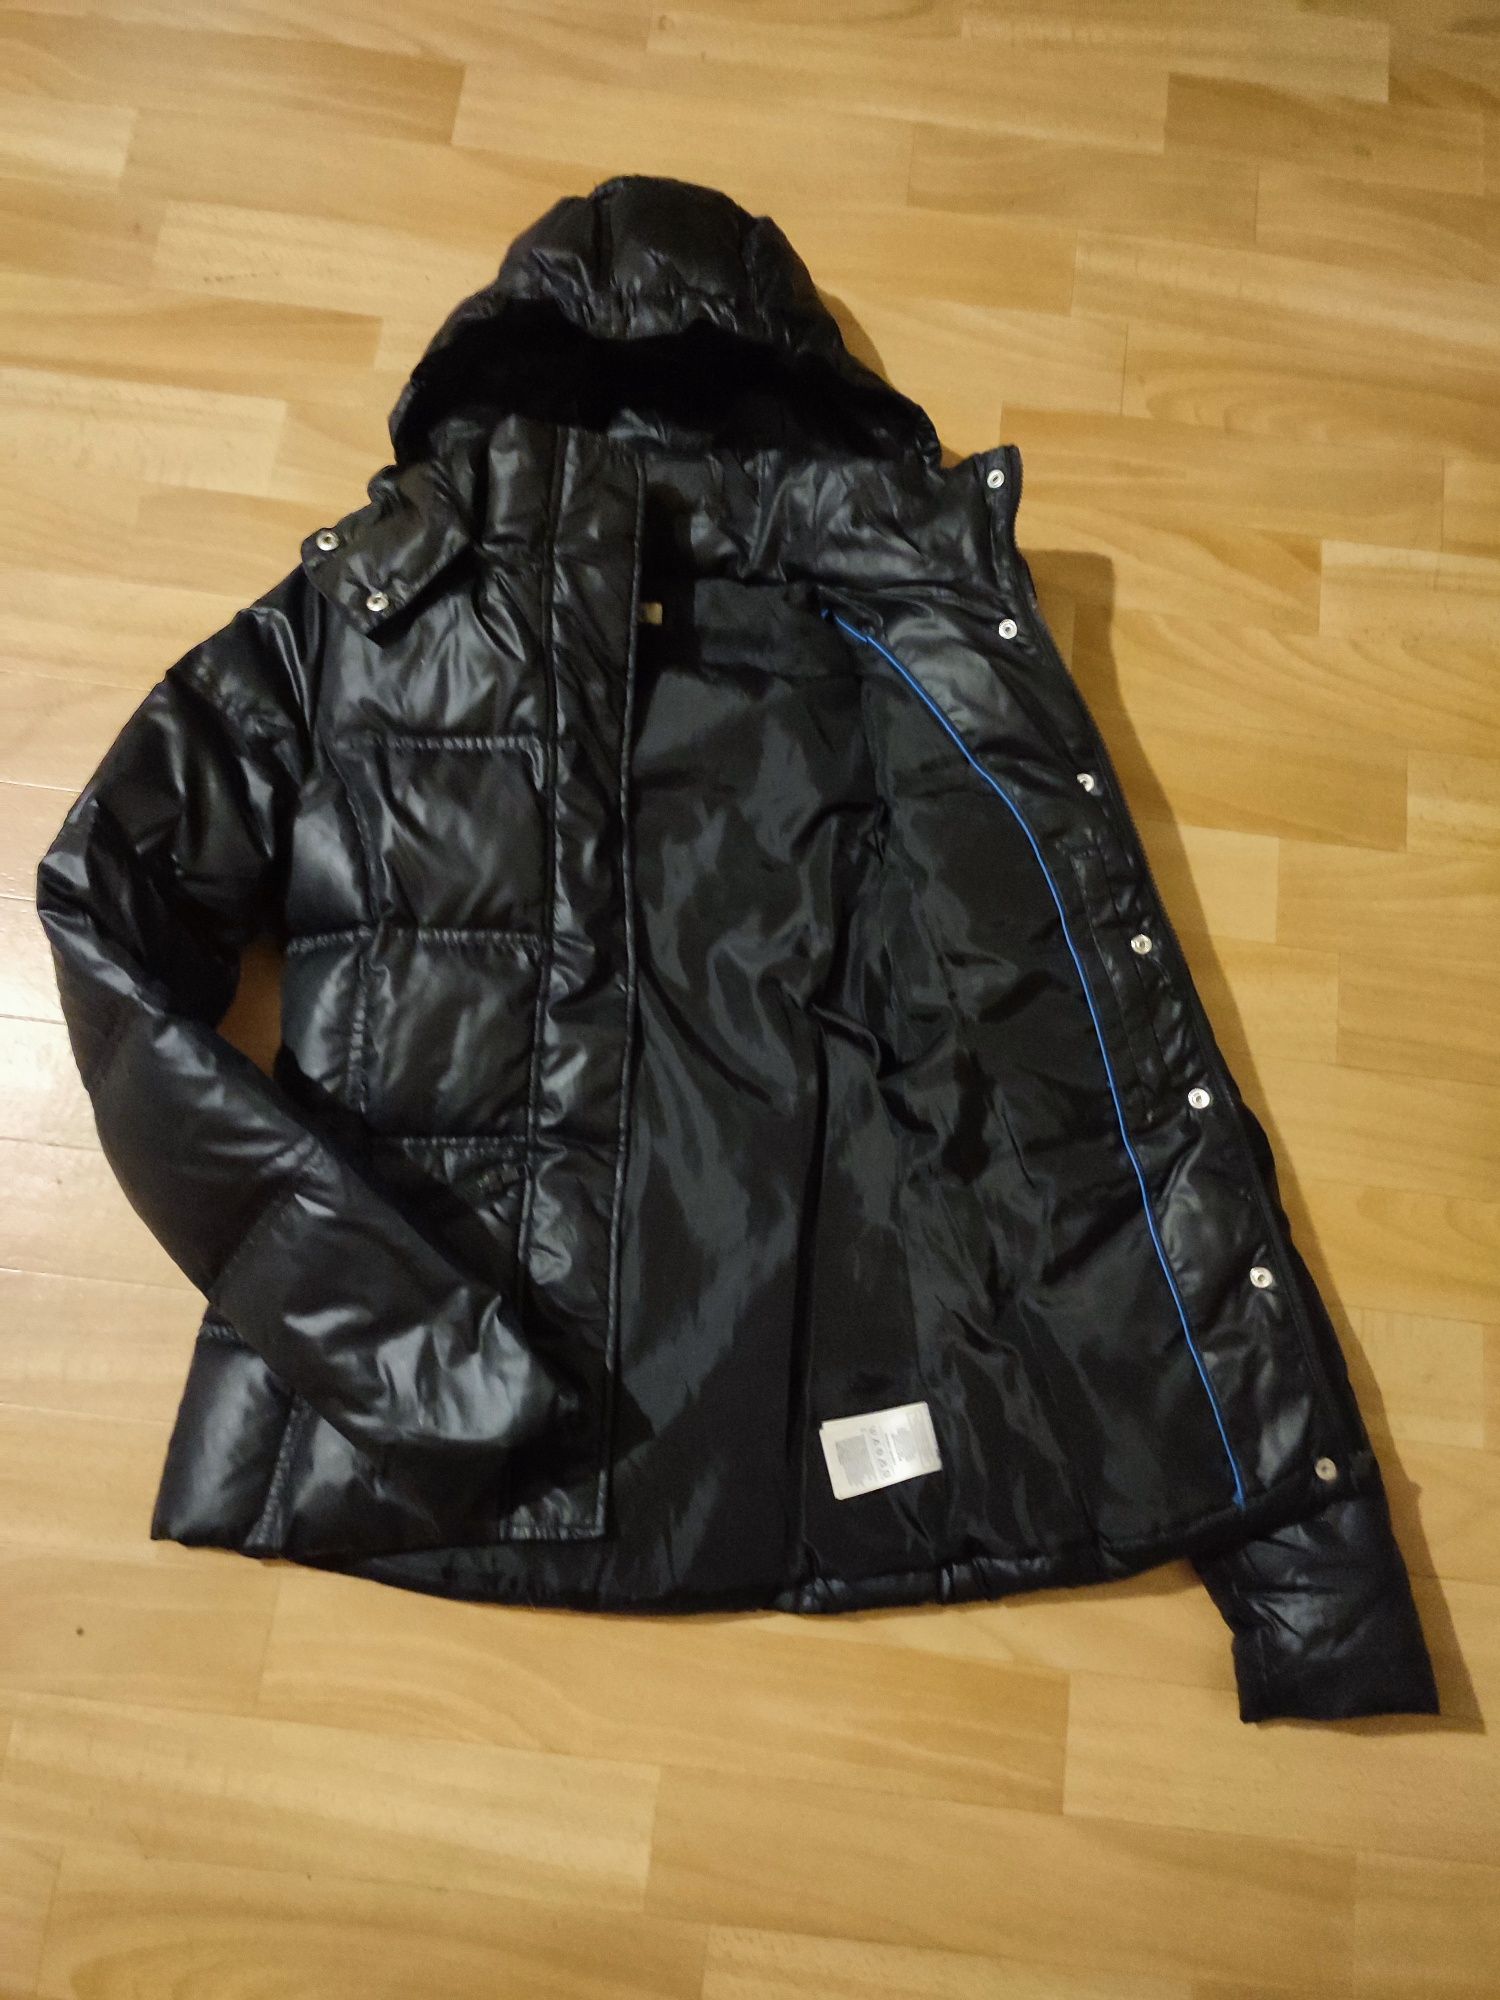 Куртка курточка пуховик Adidas для девочки подростка осень - зима